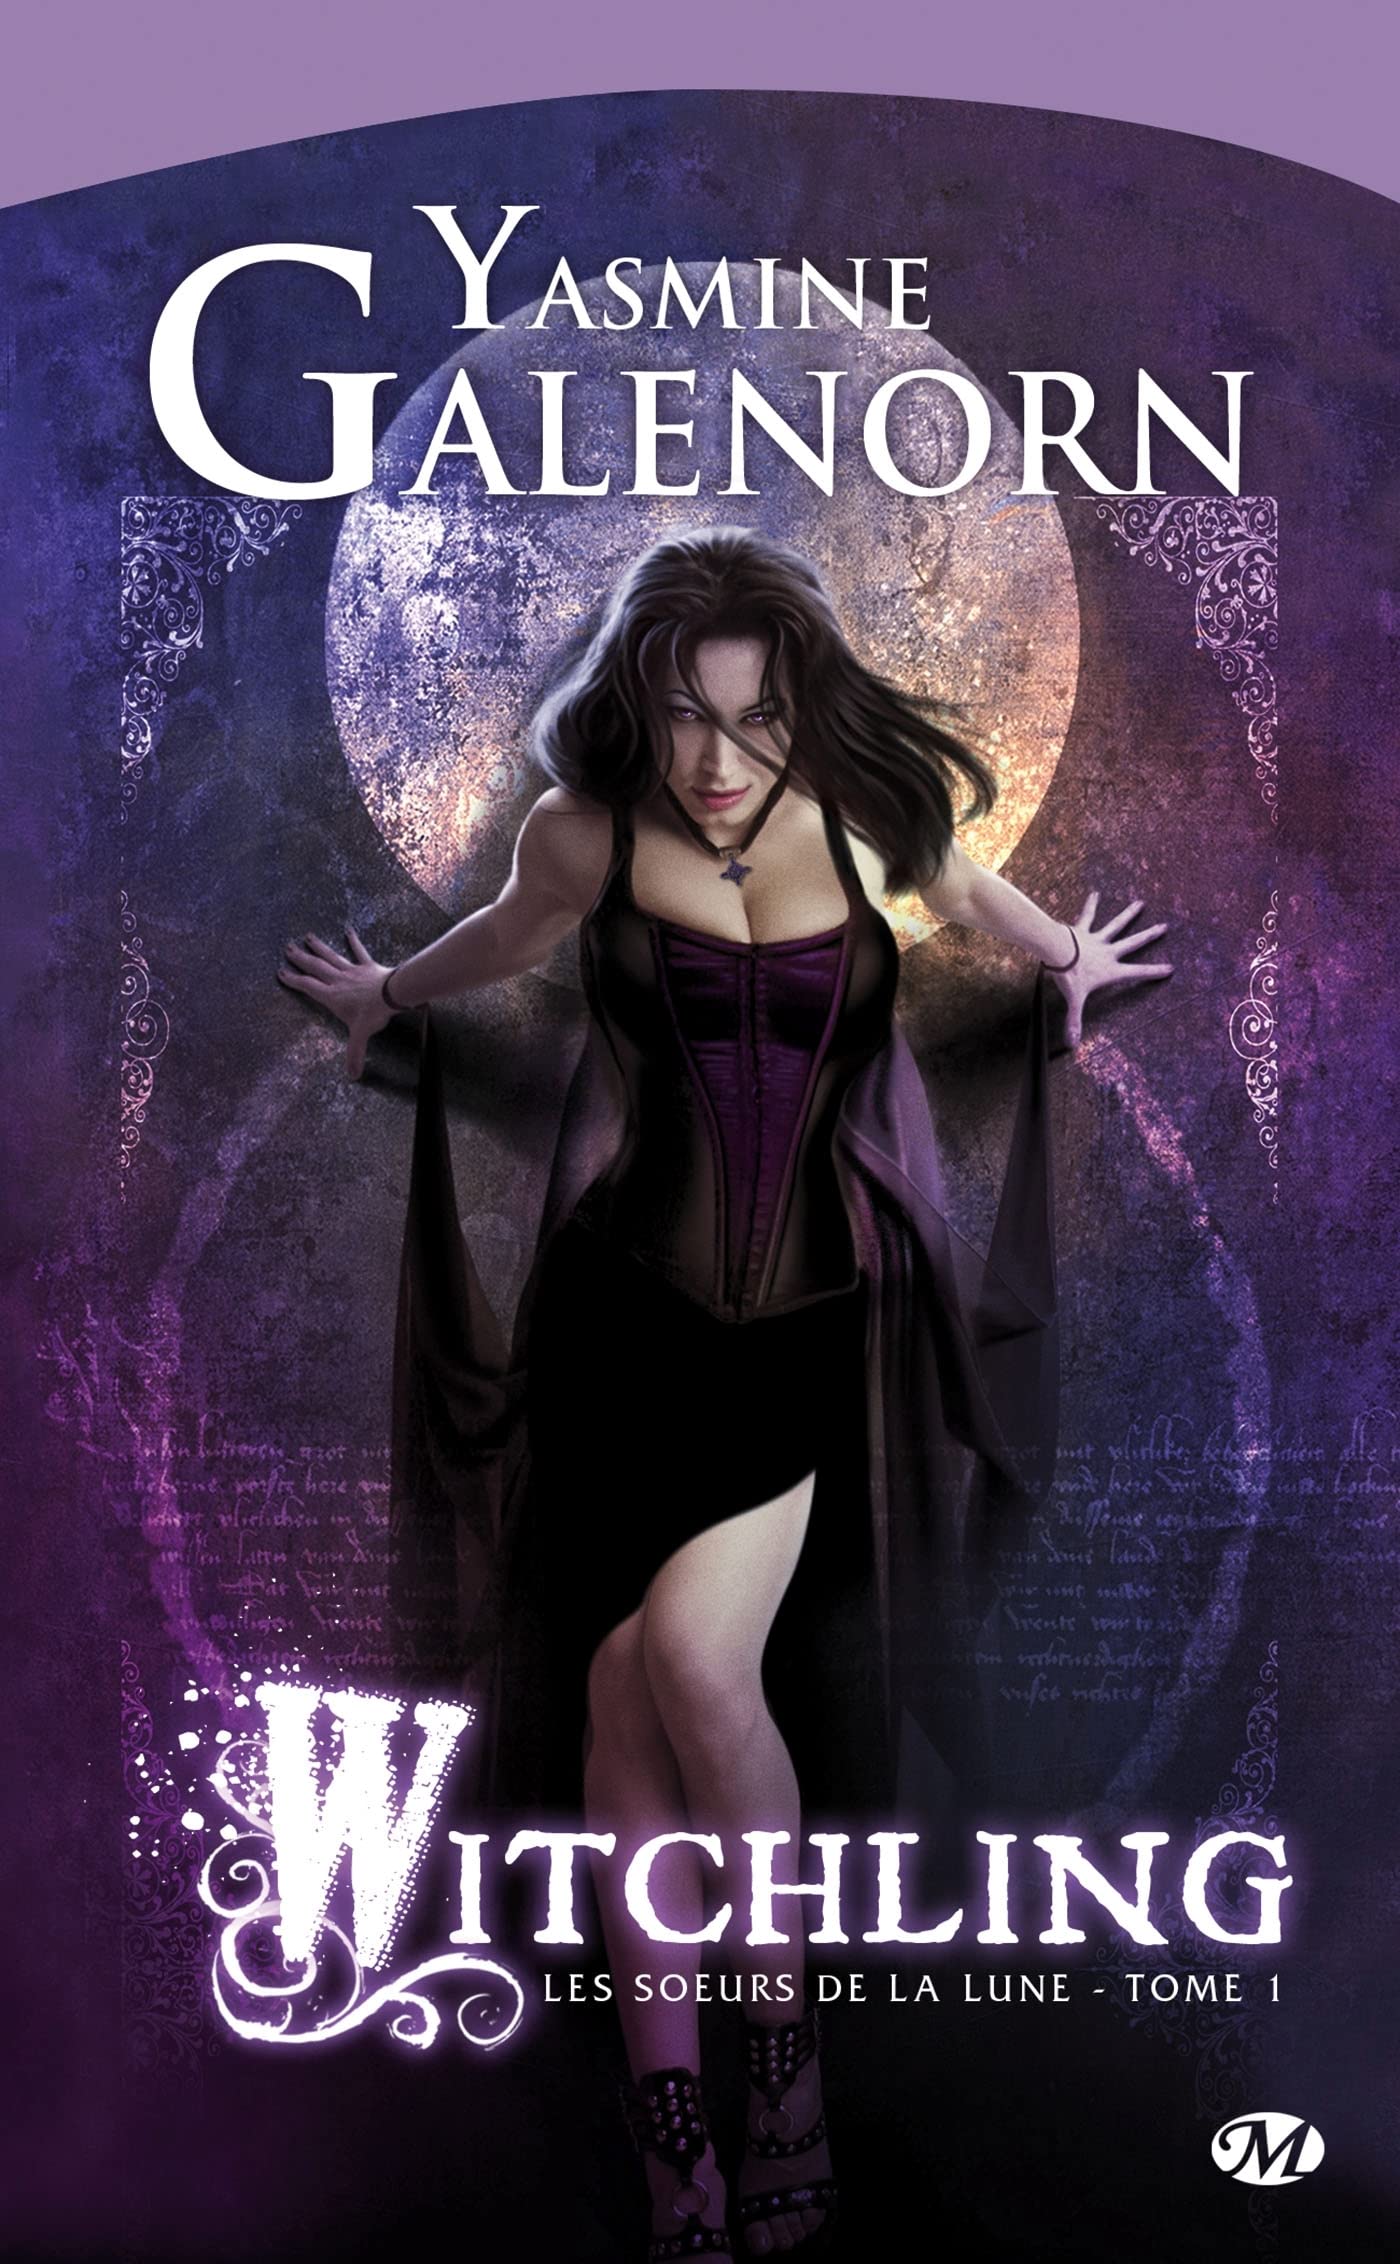 Les soeurs de la lune # 1 : Witchling - Yasmine Galenorn